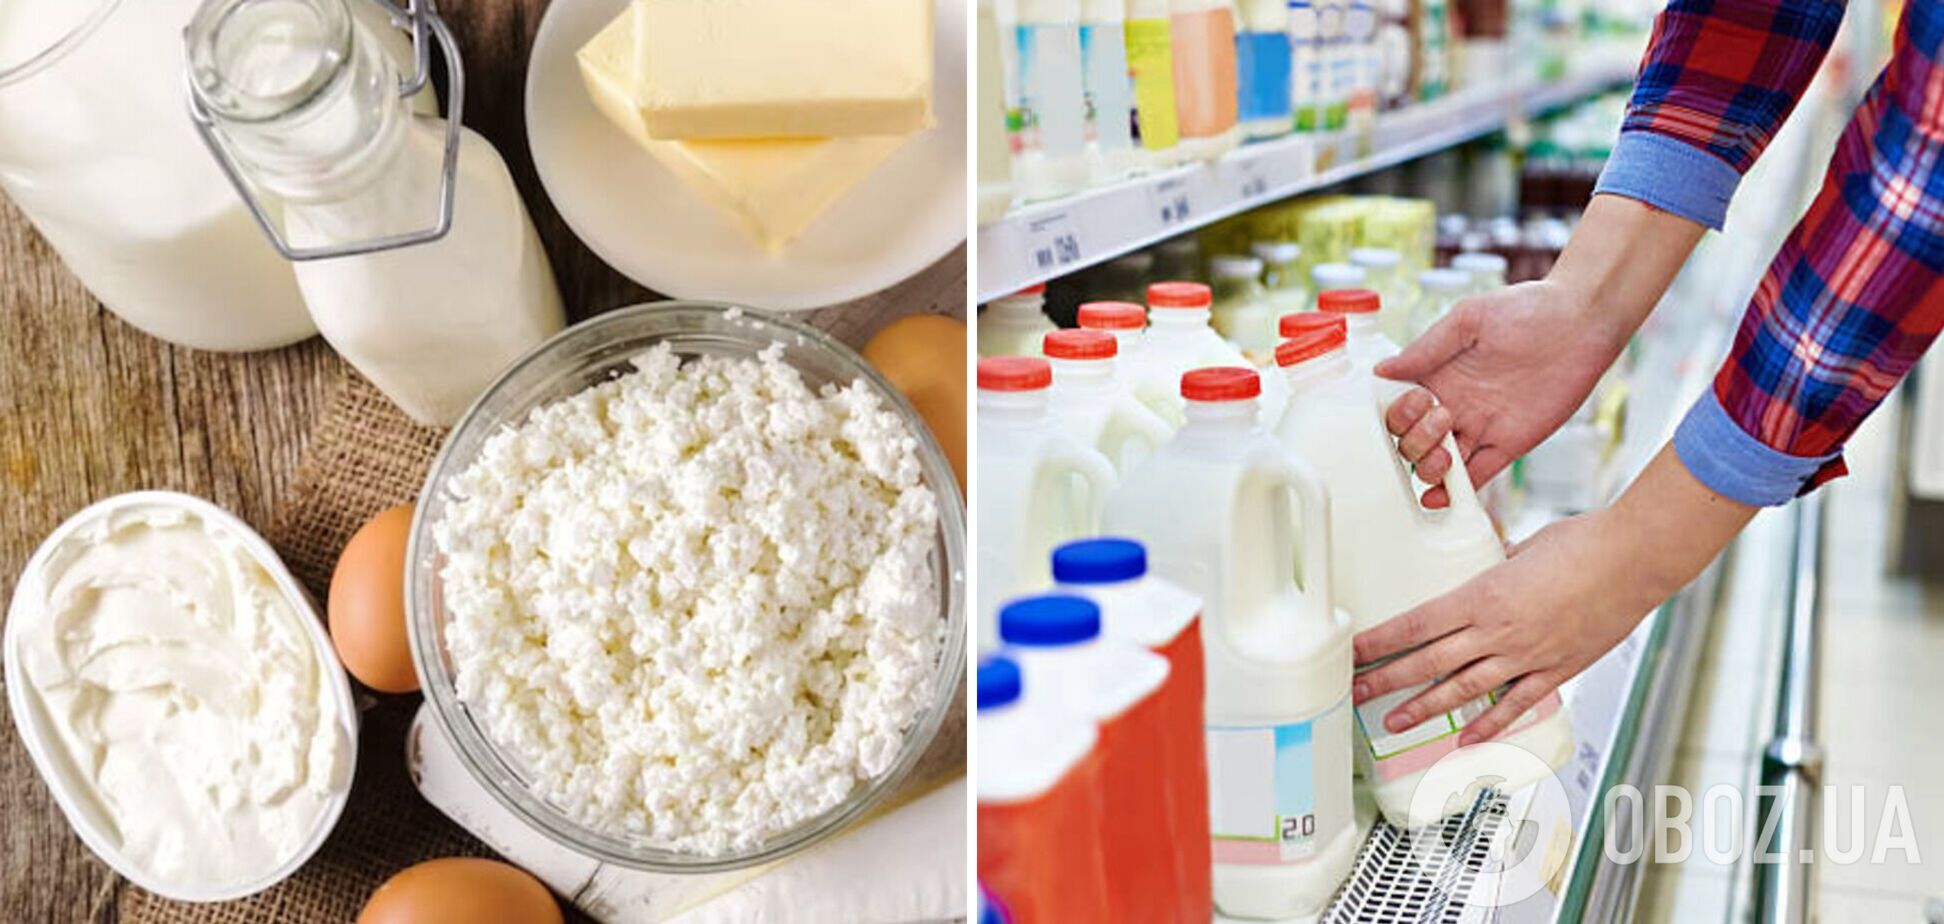 Как самостоятельно распознать фальсификаты молочной продукции